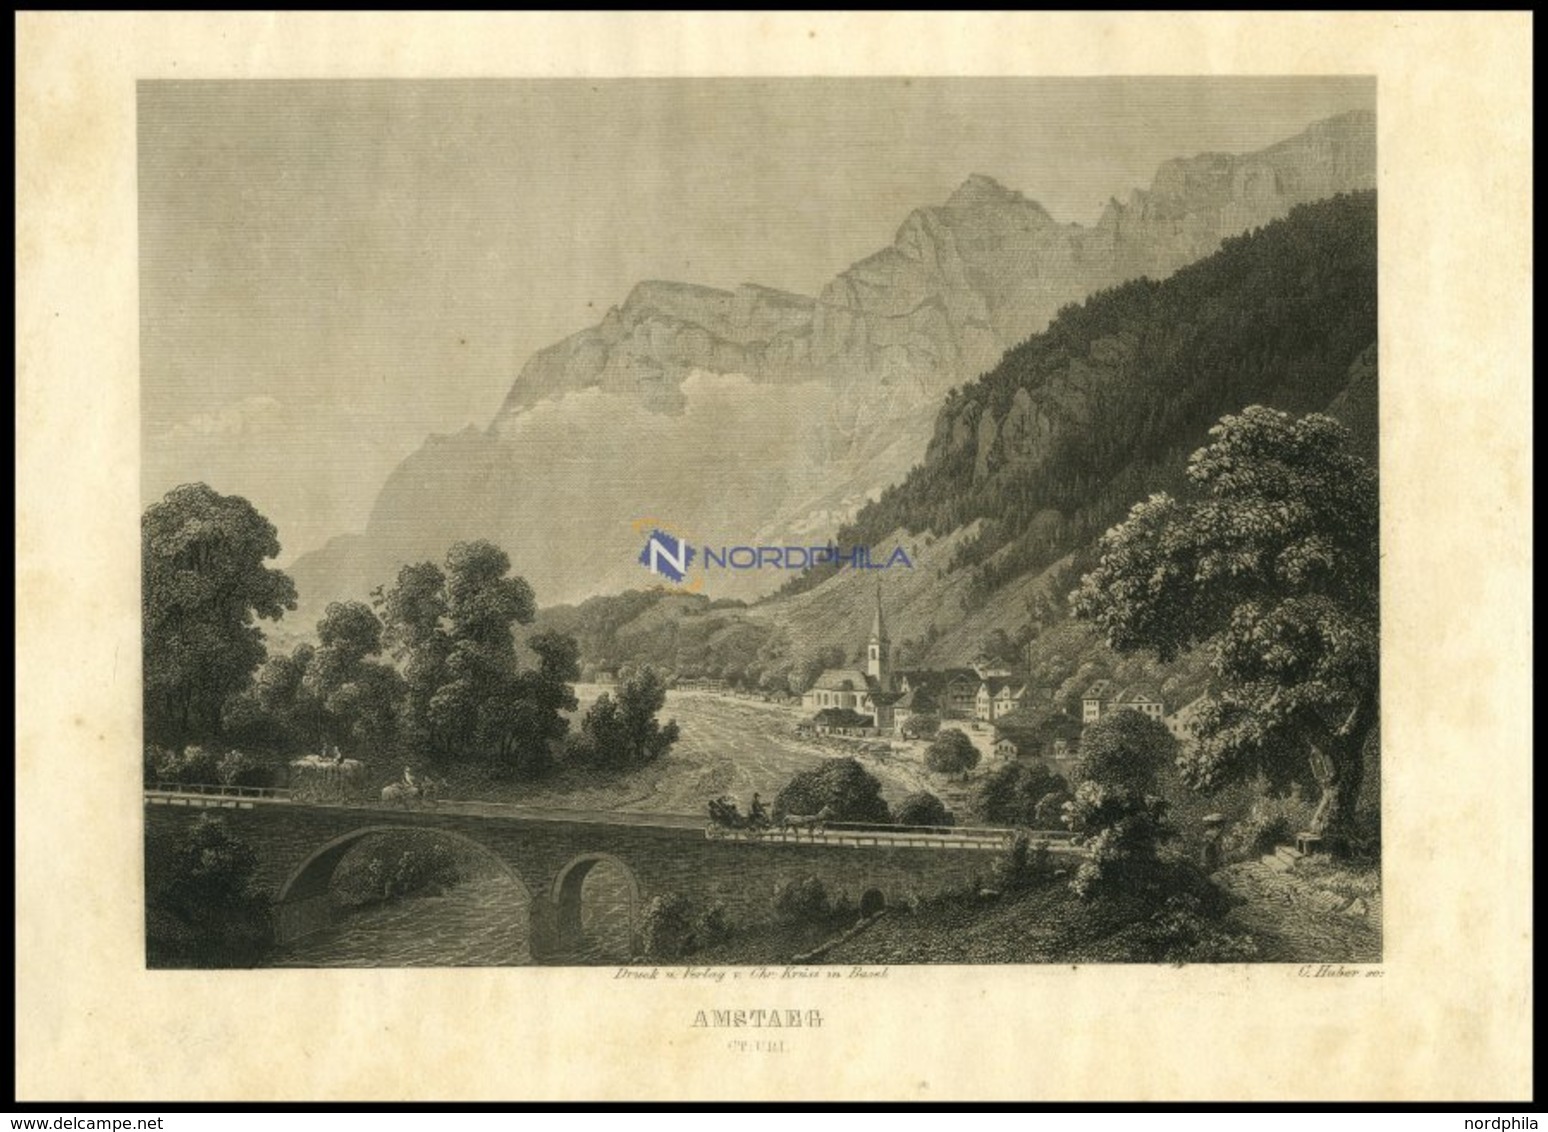 AMSTAEG, Gesamtansicht, Stahlstich Von Huber Um 1840 - Lithographien